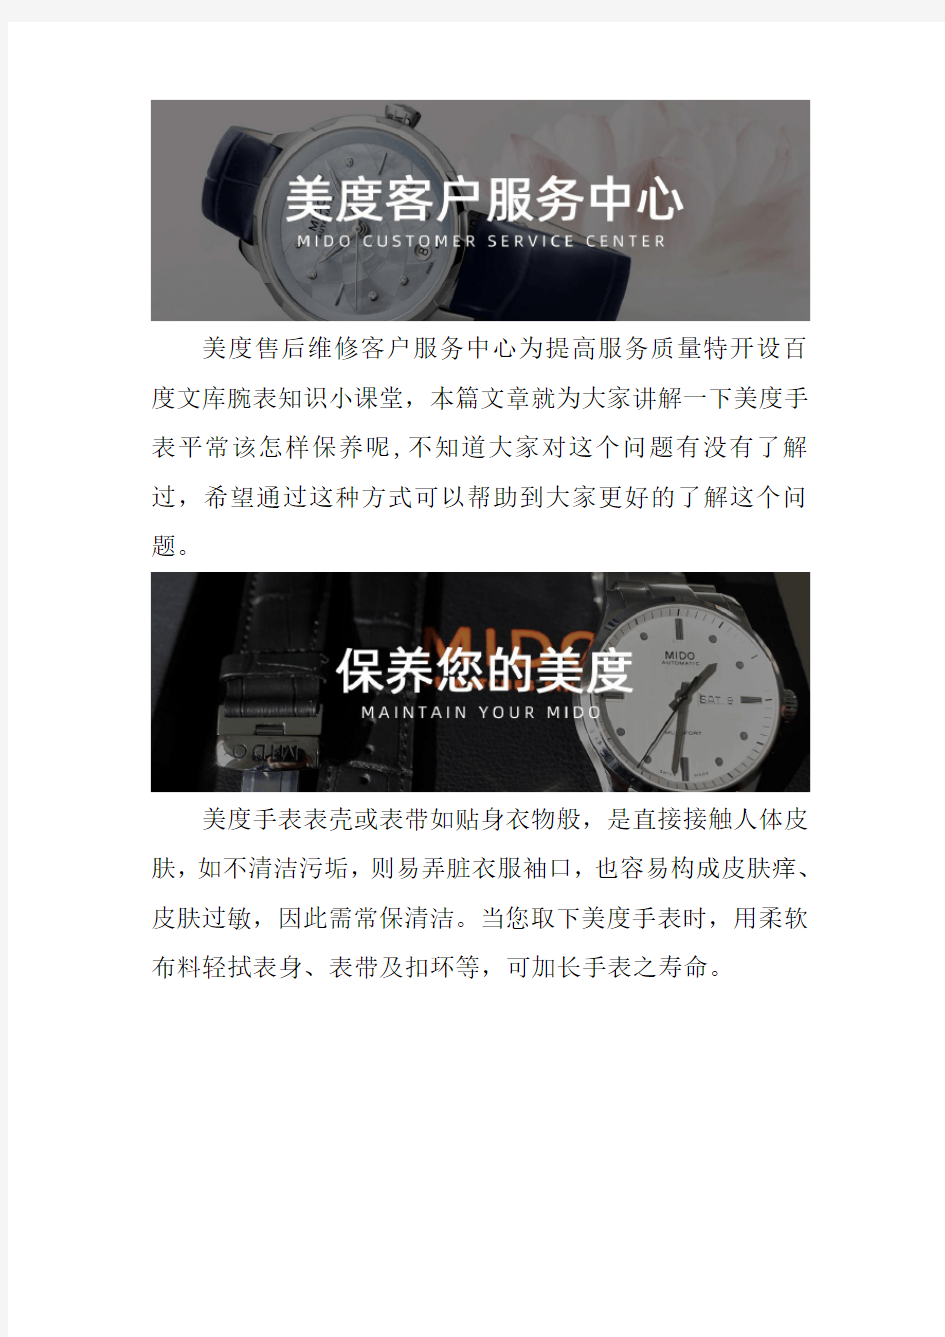 深圳美度手表售后维修服务中心-- 美度手表平常该怎样保养呢